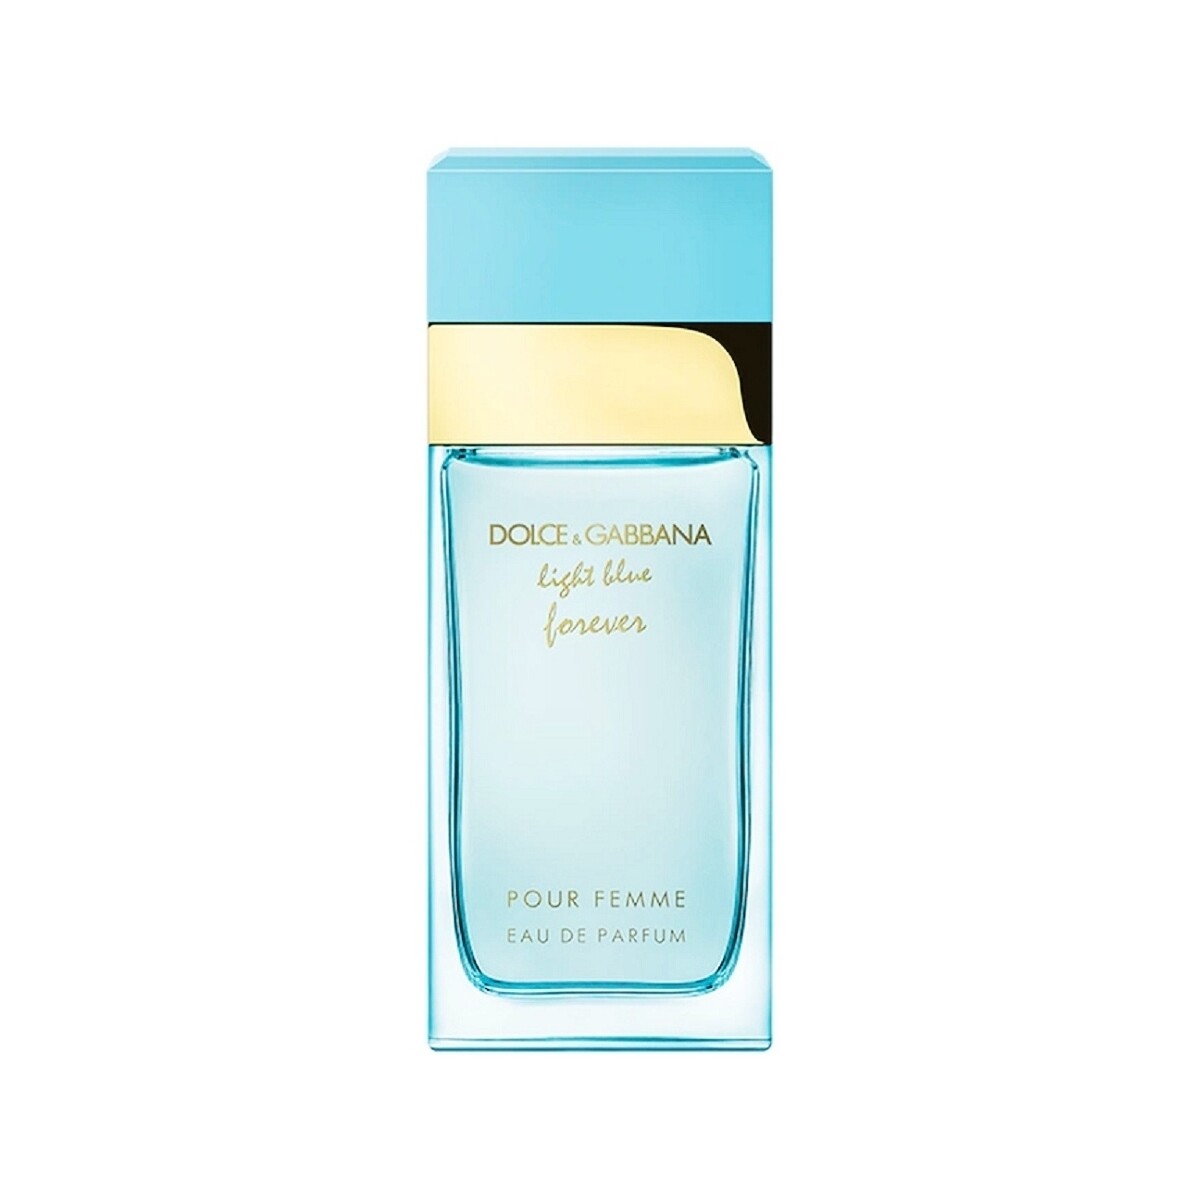 Beauté Femme Eau de parfum D&G Light Blue Forever Femme - eau de parfum - 50ml Light Blue Forever Femme - perfume - 50ml